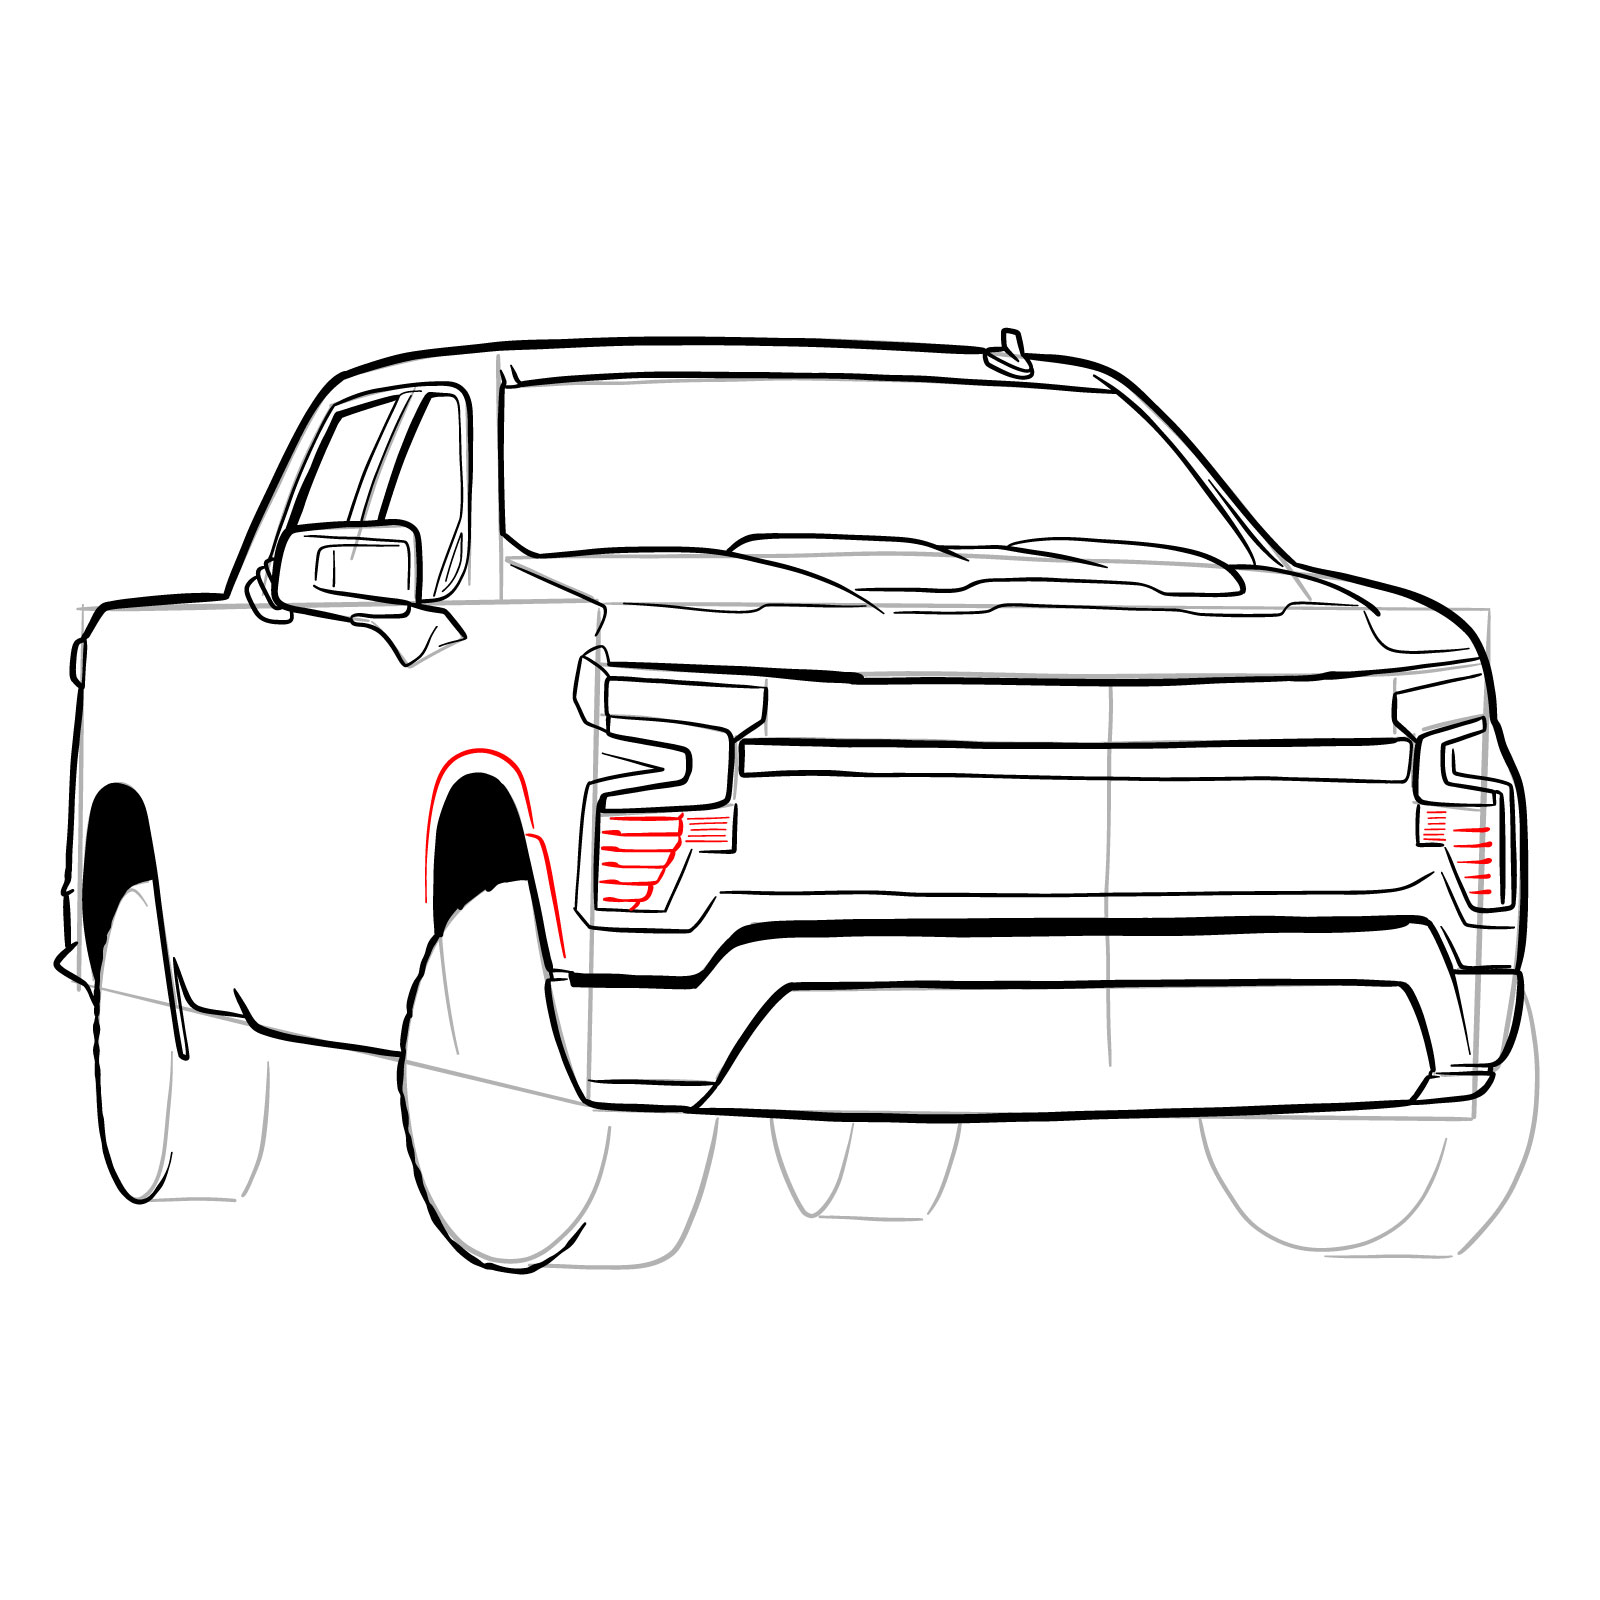 How to draw a 2022 Chevy Silverado - step 26